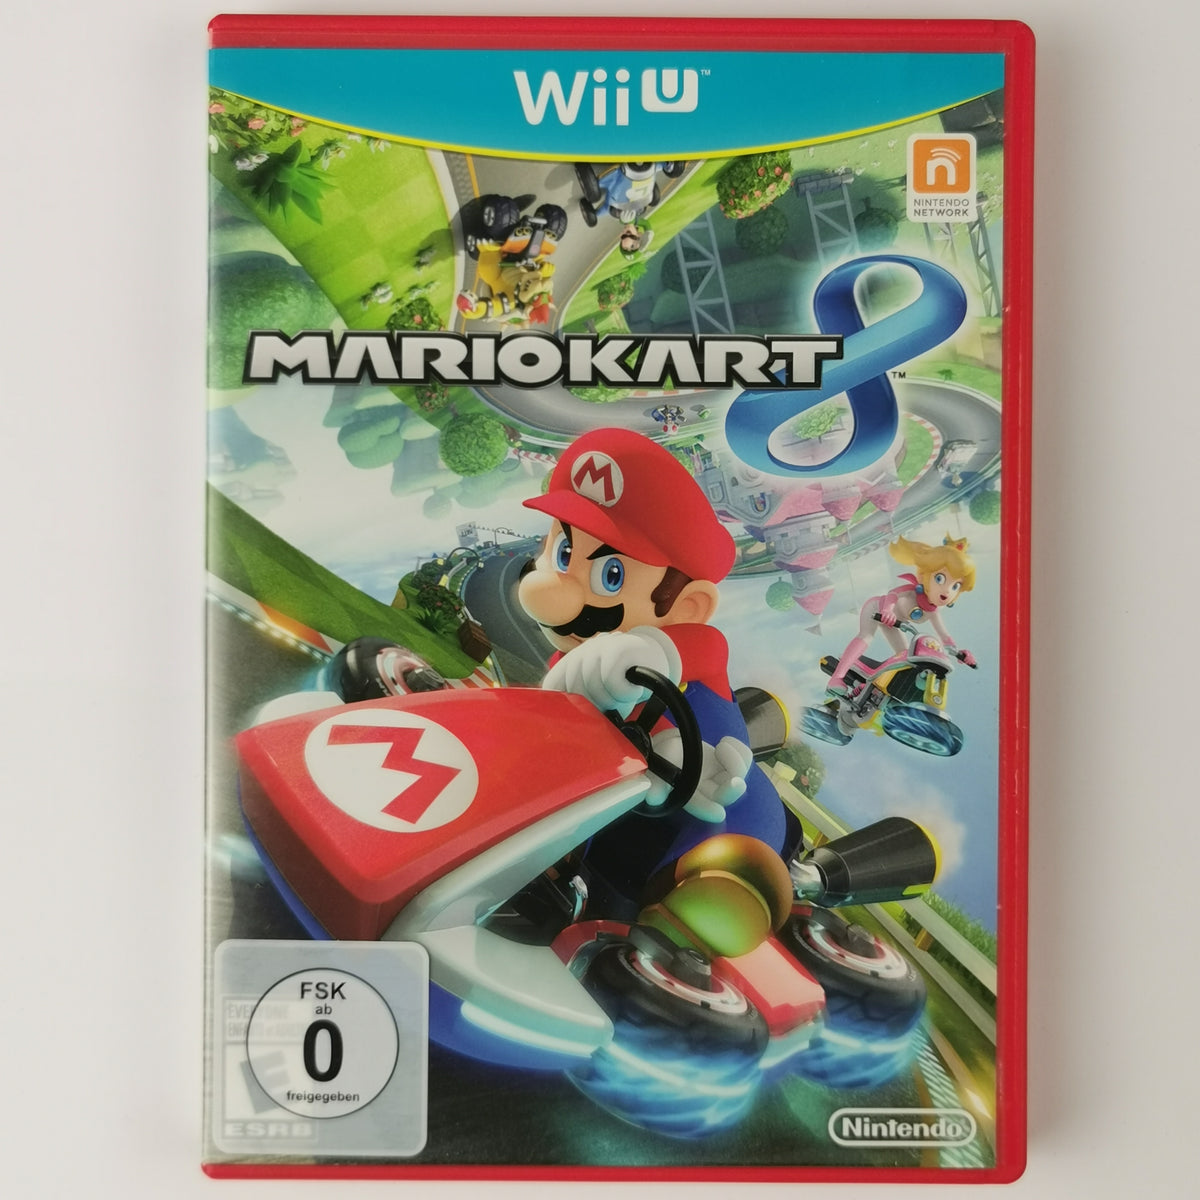 Mario Kart 8 [WIIU] Nintendo Wii U